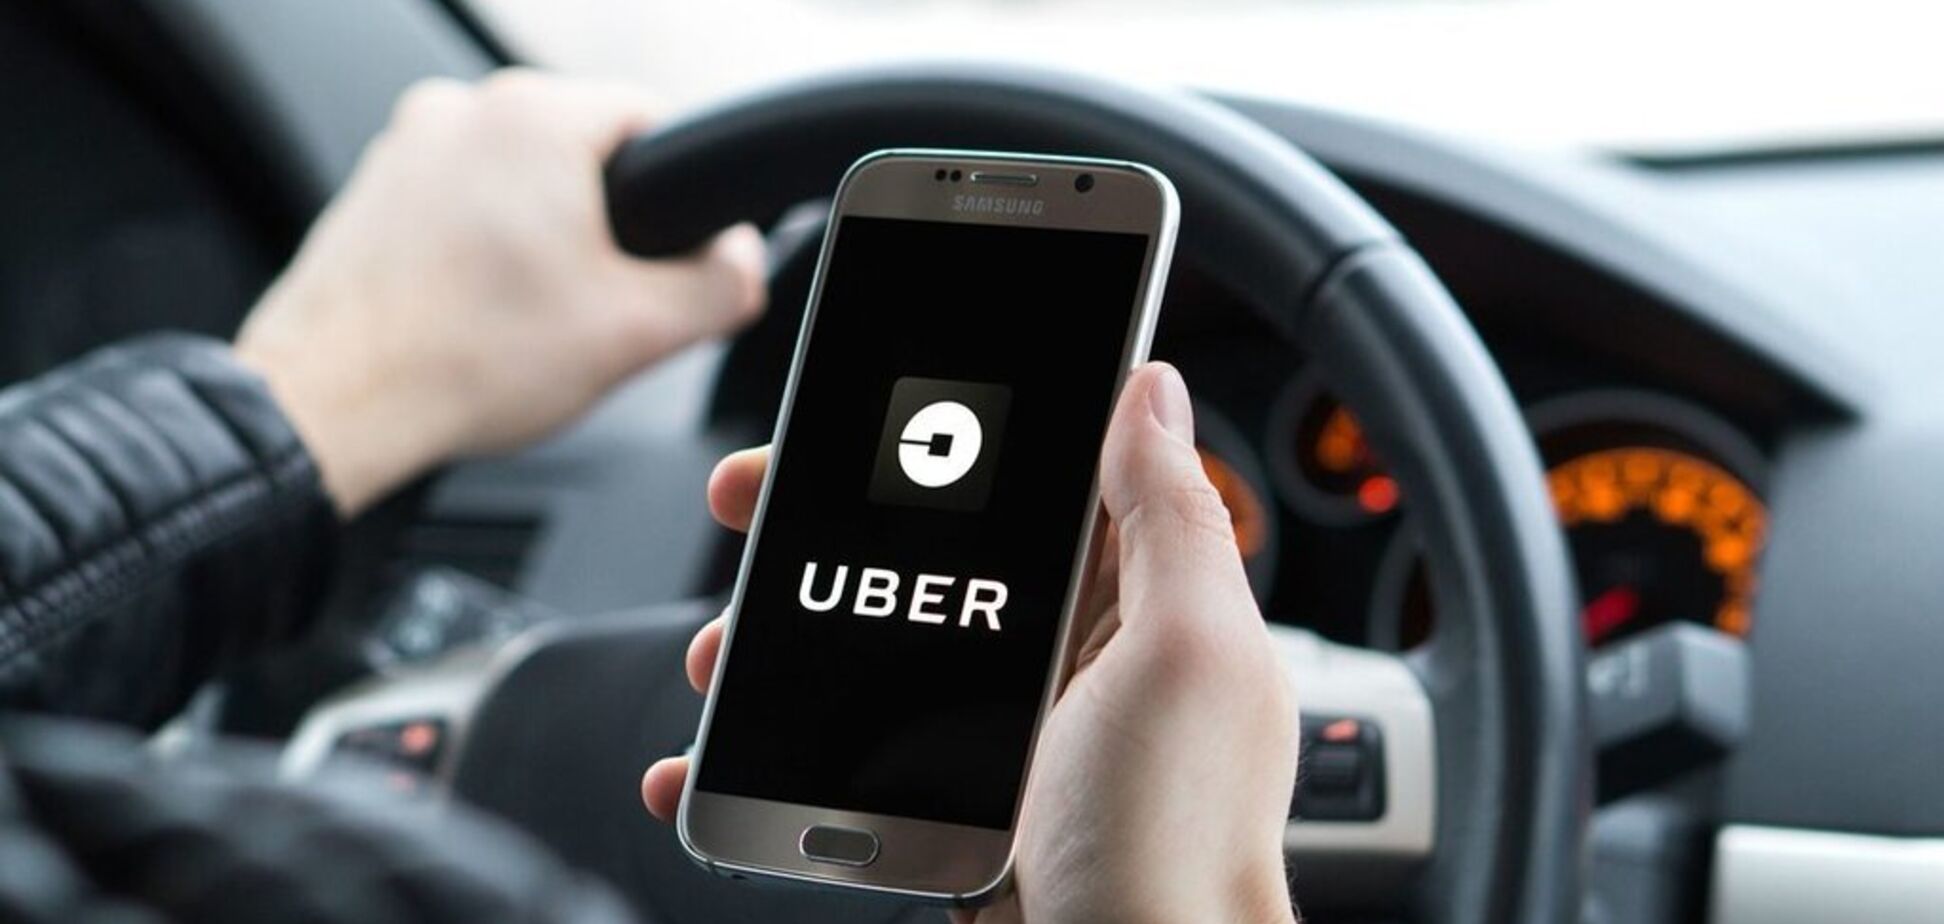 'Безопасность – наш приоритет': Такси Uber лишили лицензии в Лондоне